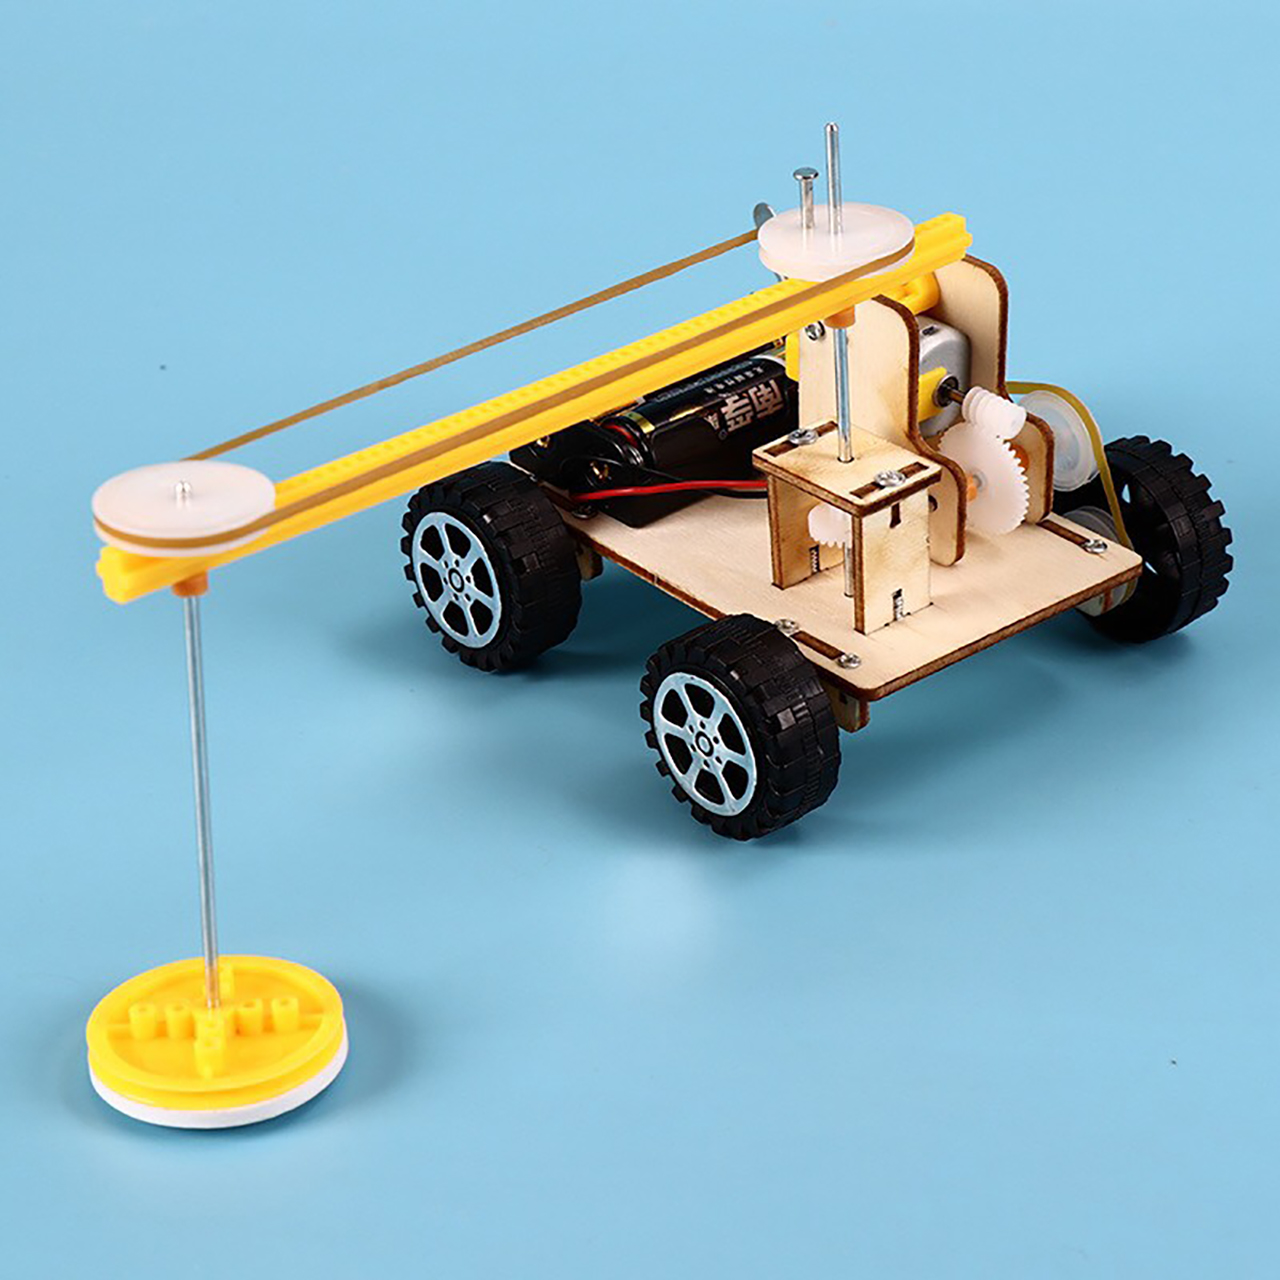 Đồ chơi trẻ em S33 thông minh sáng tạo STEM STEAM mô hình lắp ráp robot